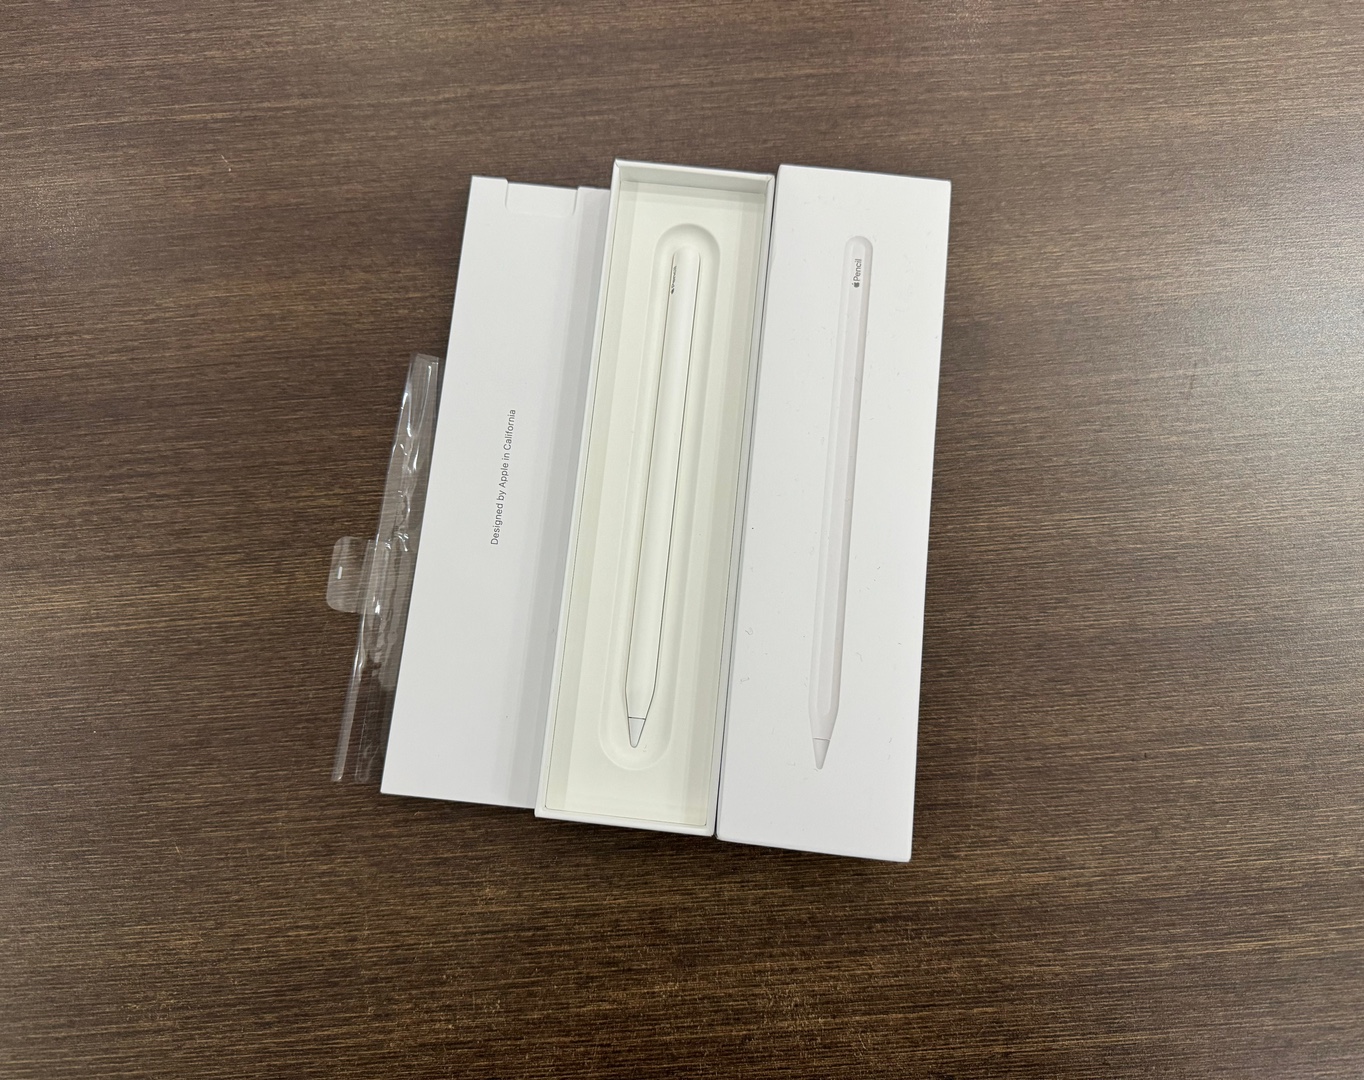 accesorios para electronica - Apple Pencil 2da Generación Como Nuevo, 100% Original , RD$ 5,500 NEG 0